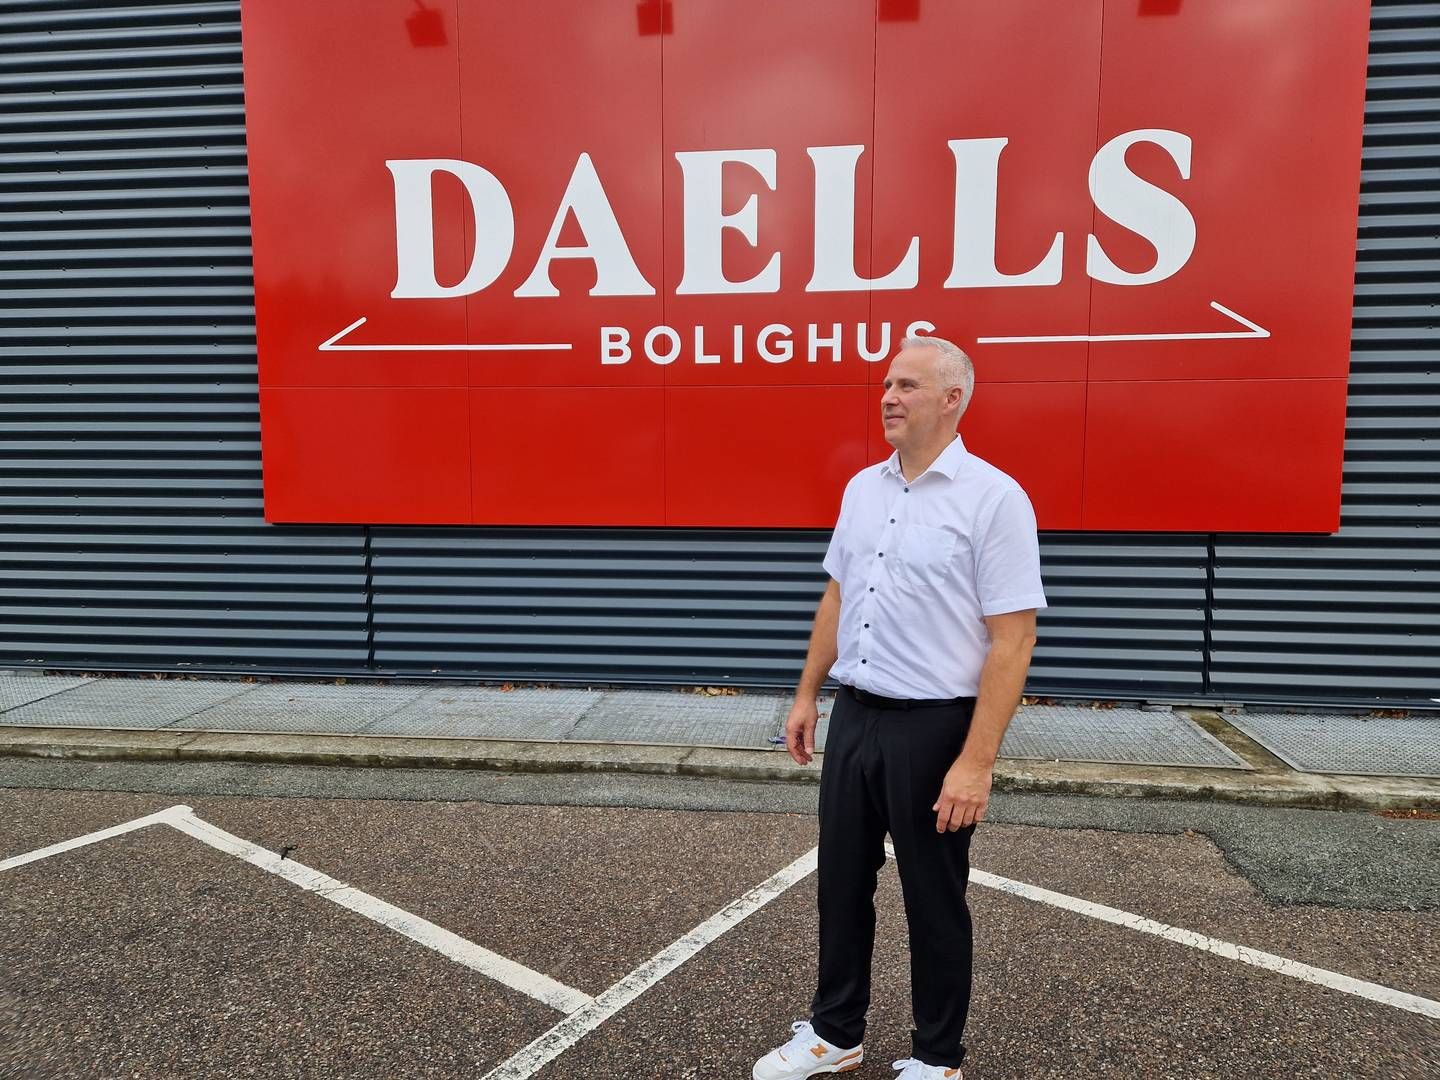 Brian Seemann Broe ser Daells Bolighus som en skjult perle, som danskerne ikke kender. "Vi skal gå fra at være ukendte til at være en lille smule kendte," bemærker han. | Photo: Jens Betak/detailwatch